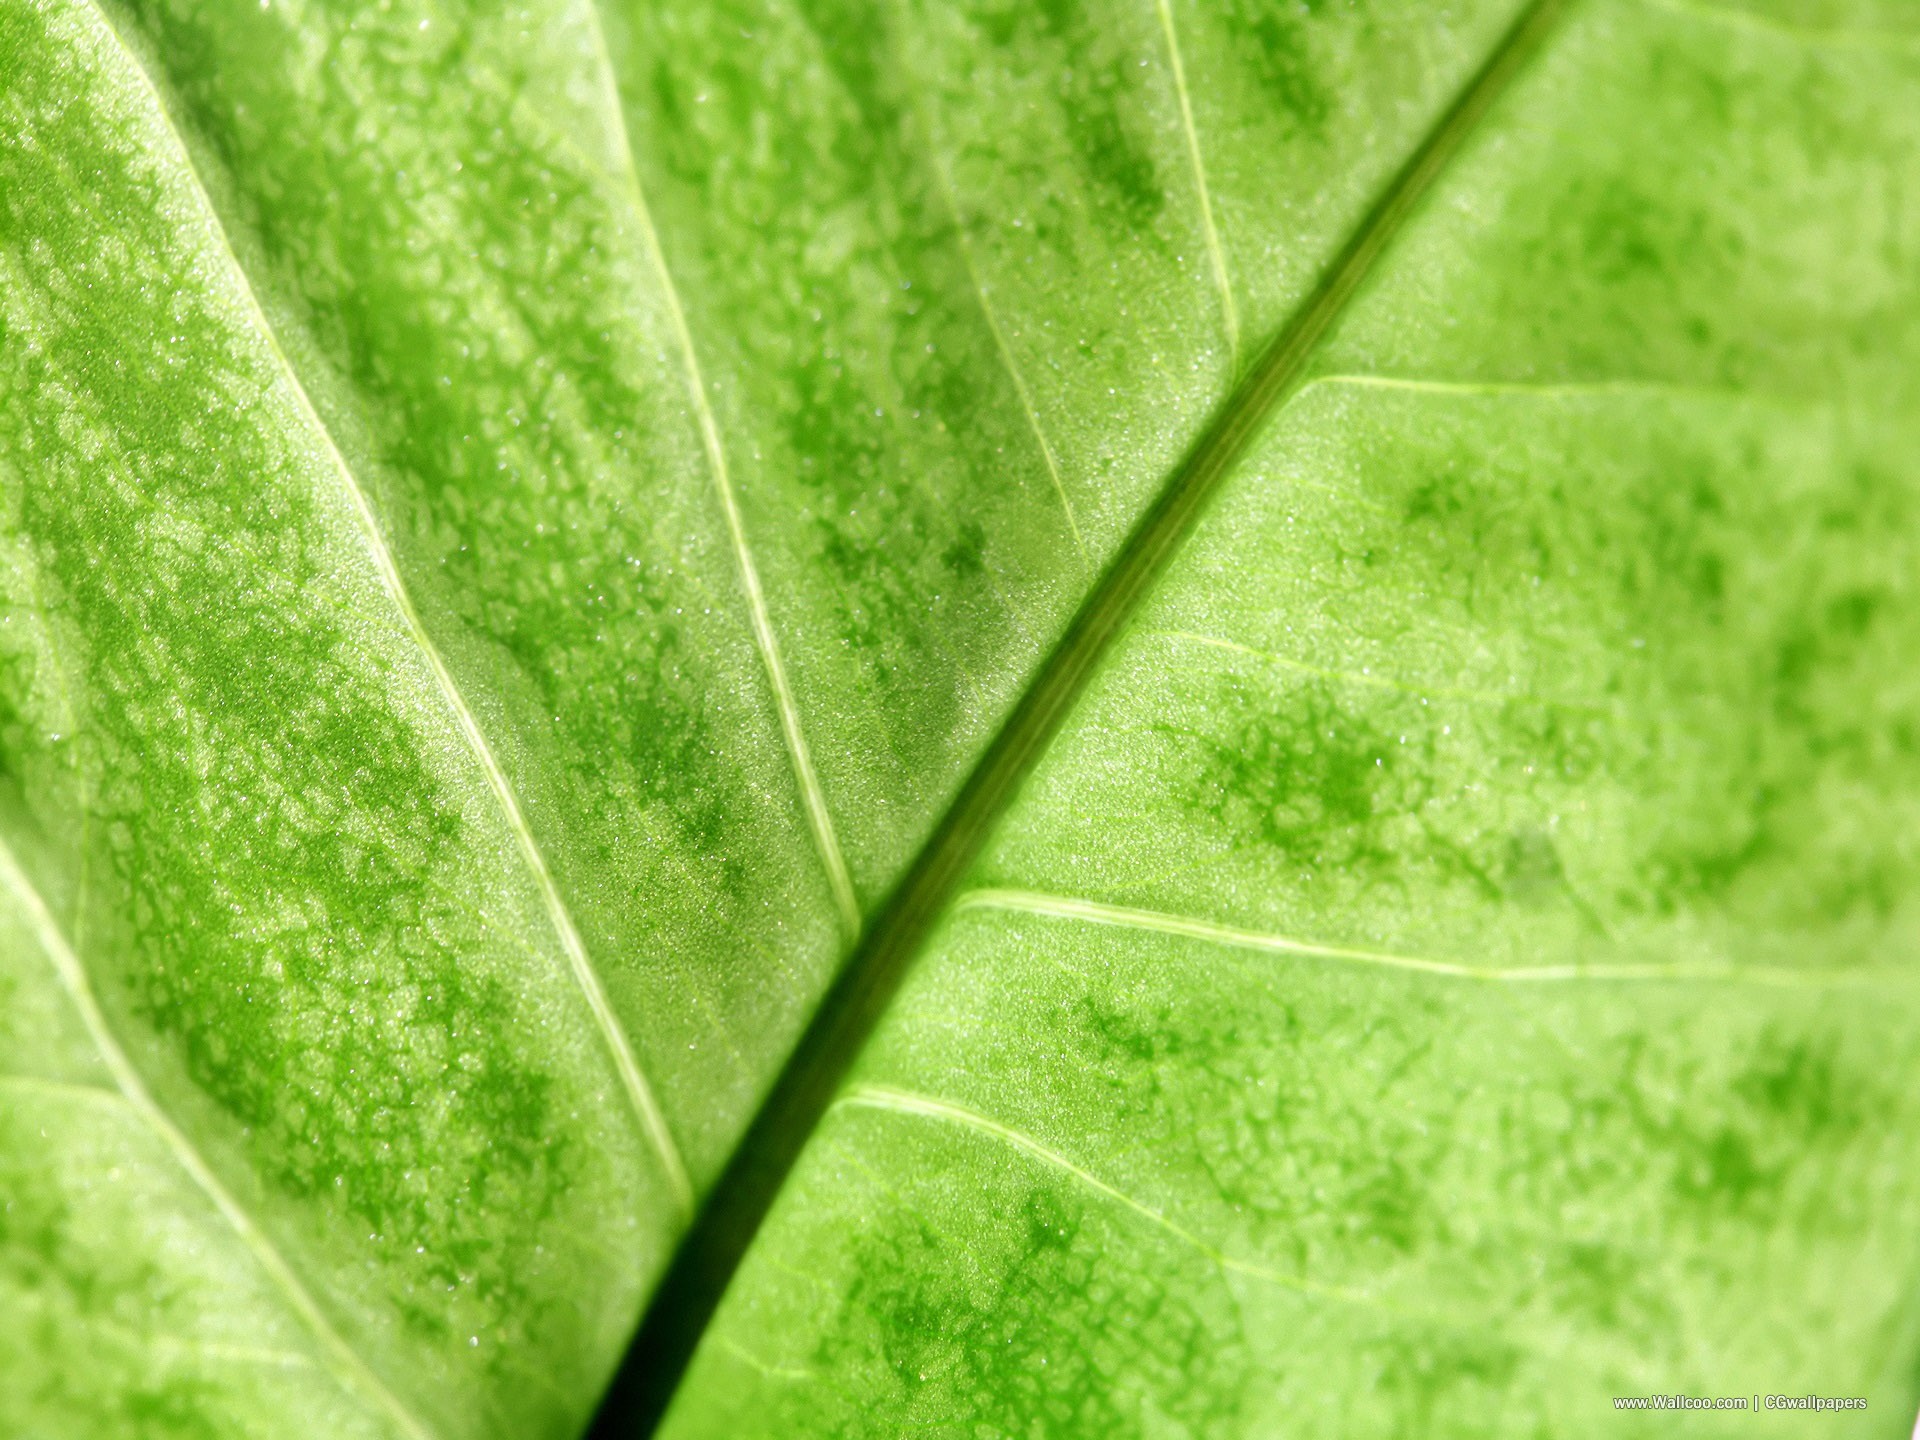 壁纸1920x1440高清晰植物绿叶壁纸 高清晰植物绿叶壁纸 高清晰植物绿叶图片 高清晰植物绿叶素材 植物壁纸 植物图库 植物图片素材桌面壁纸